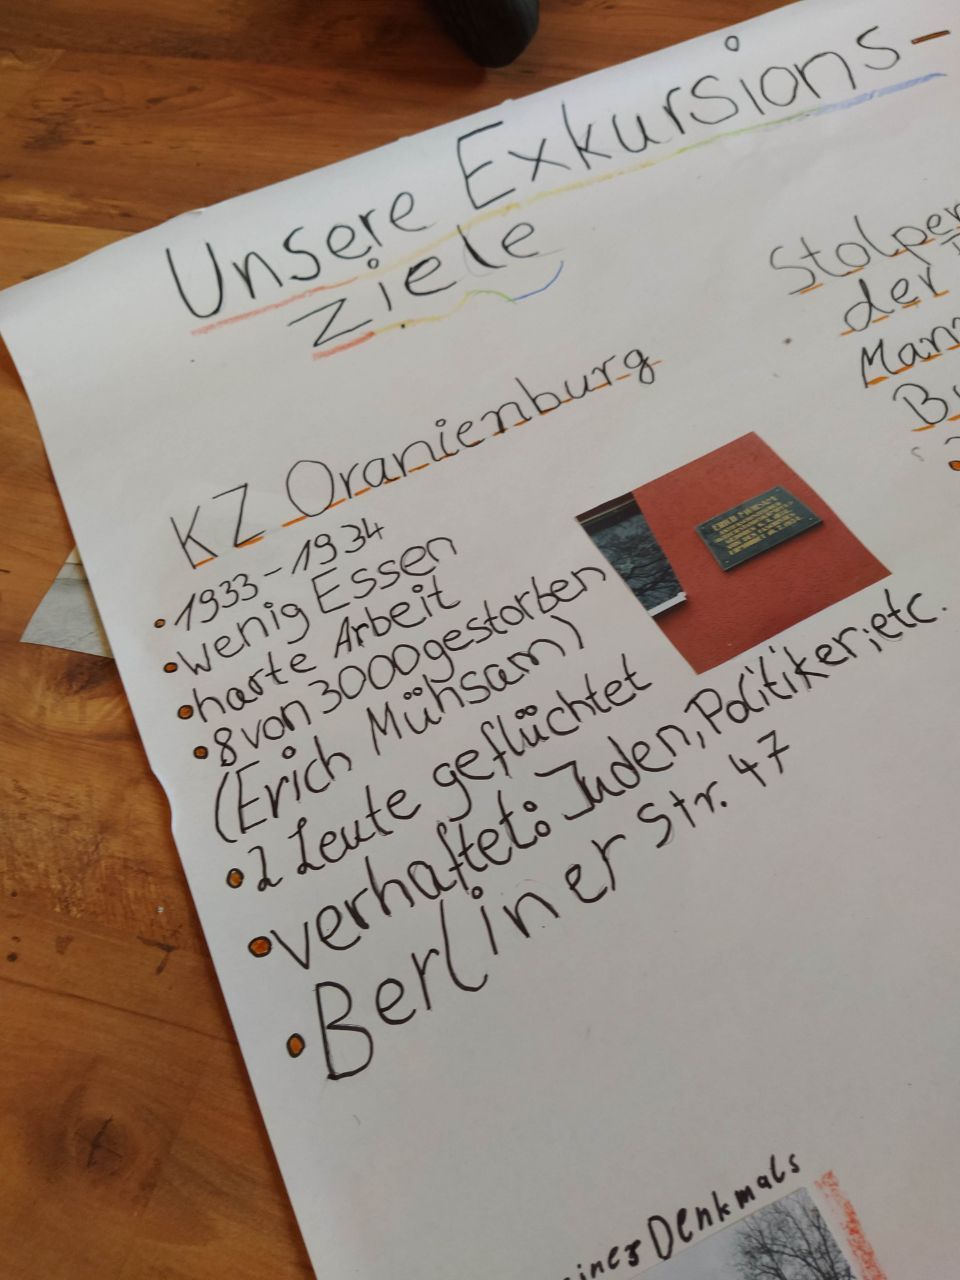 Das Foto dokumentiert die Projektwoche der Waldgrundschule Oranienburg und zeigt ein beschriebenes Flipchart.